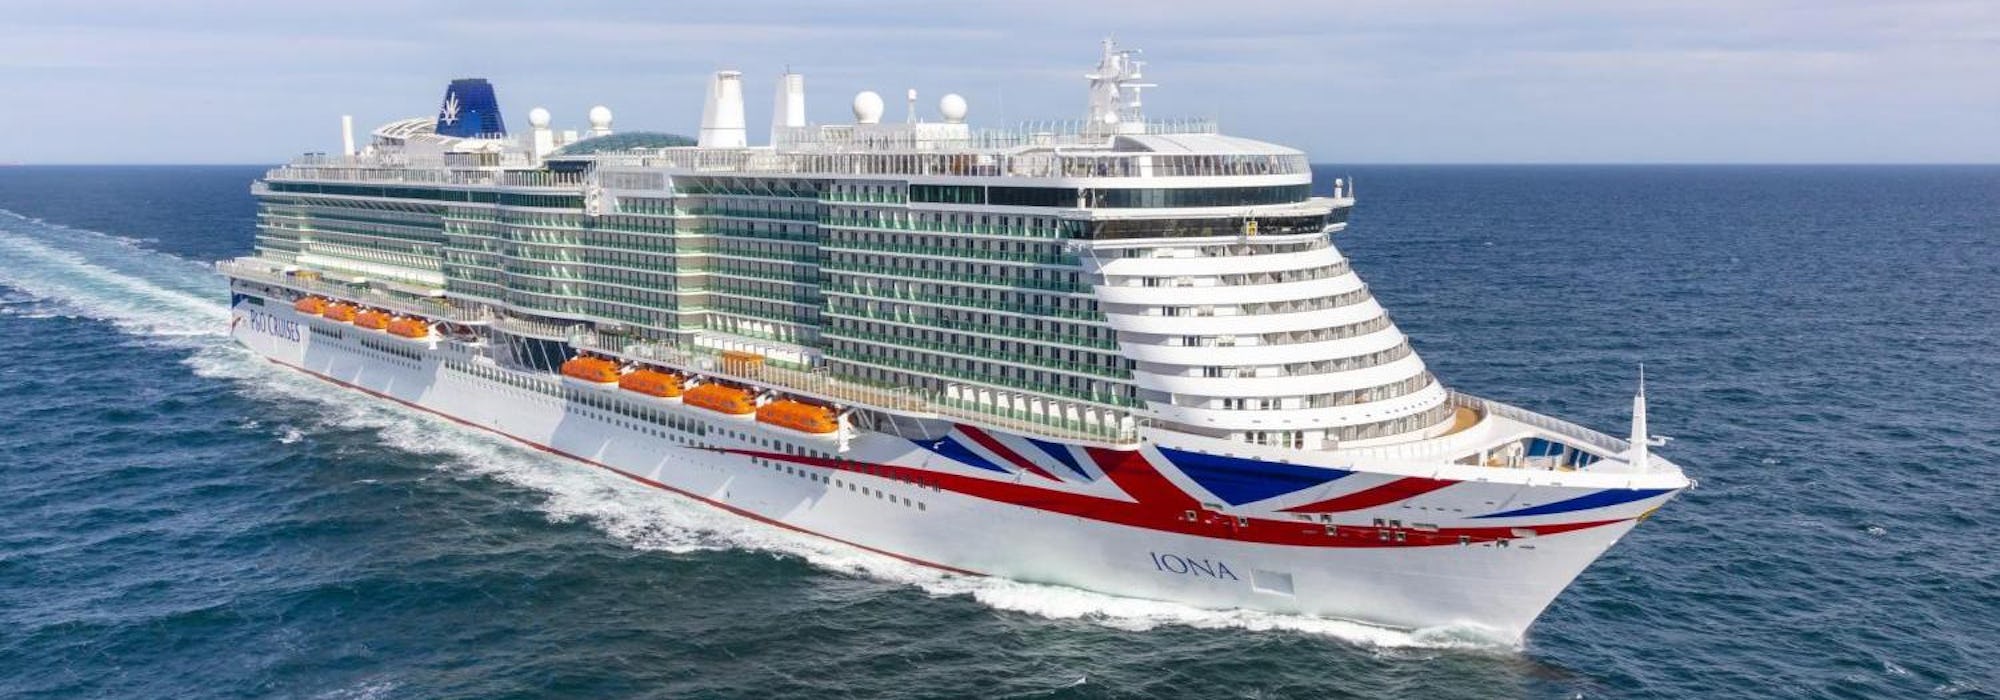 P&O Cruises - Iona